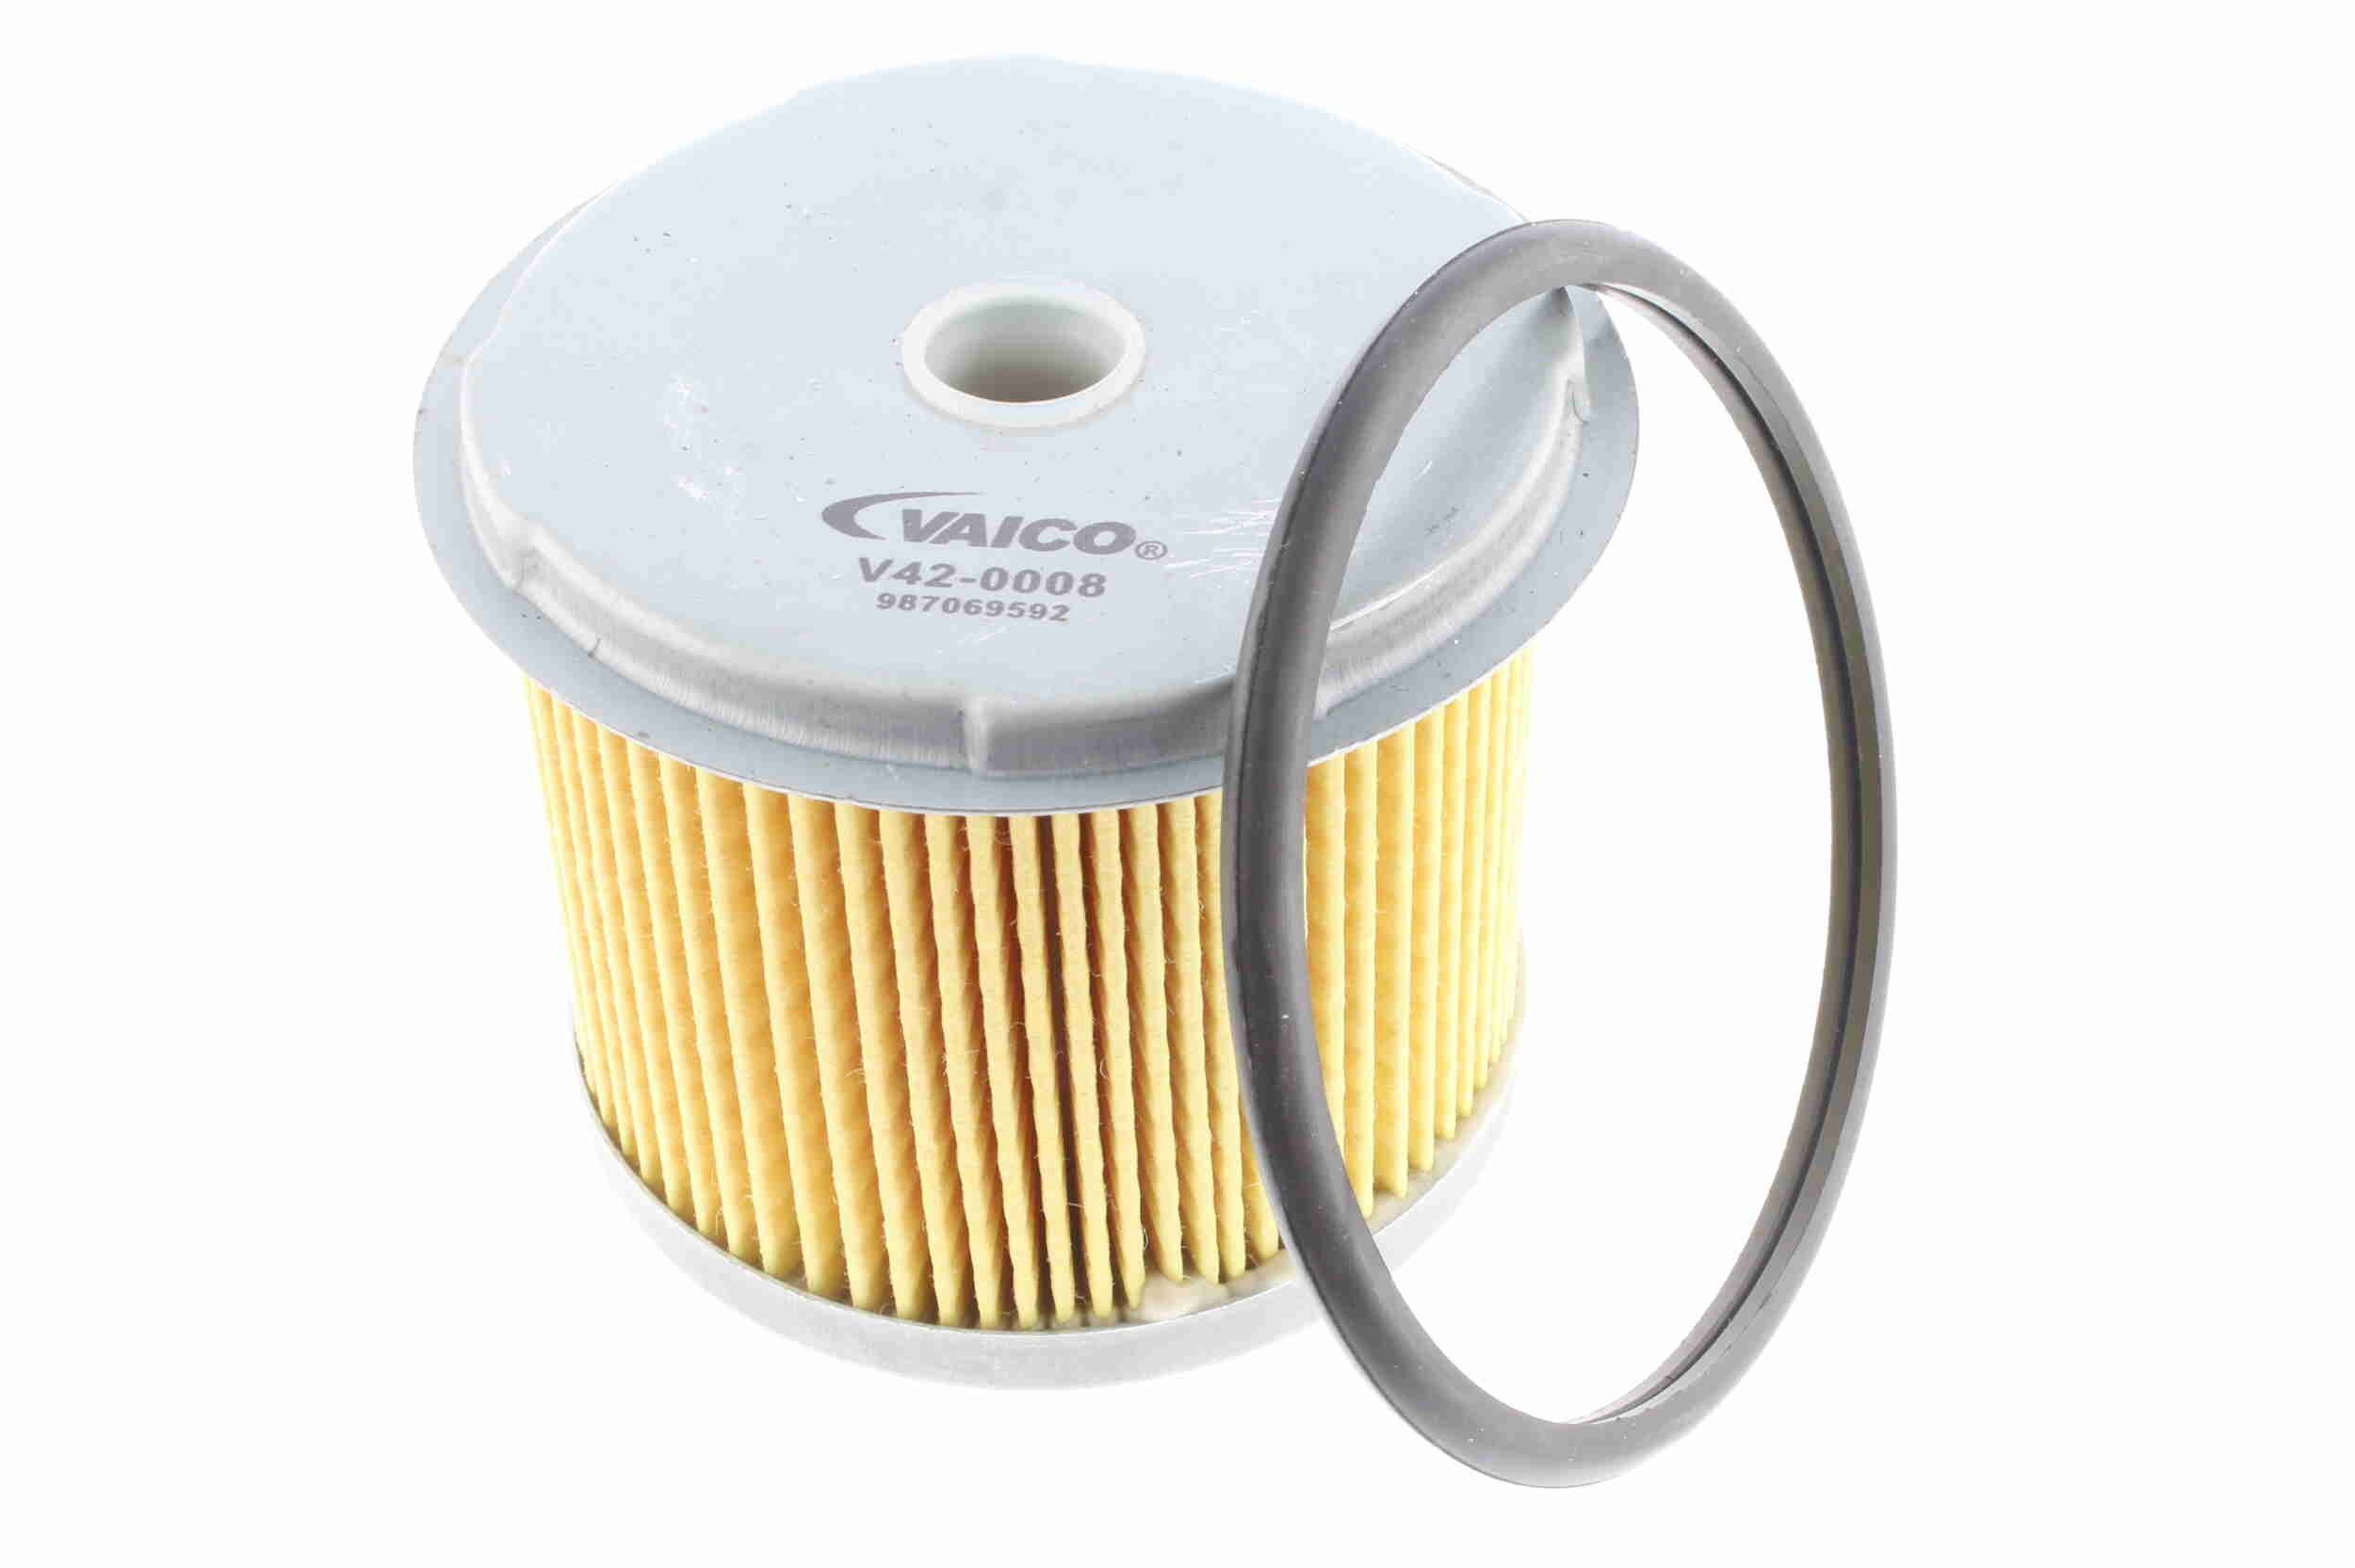 VAICO V42-0008 Fuel filter Filter Insert, Original VAICO Quality